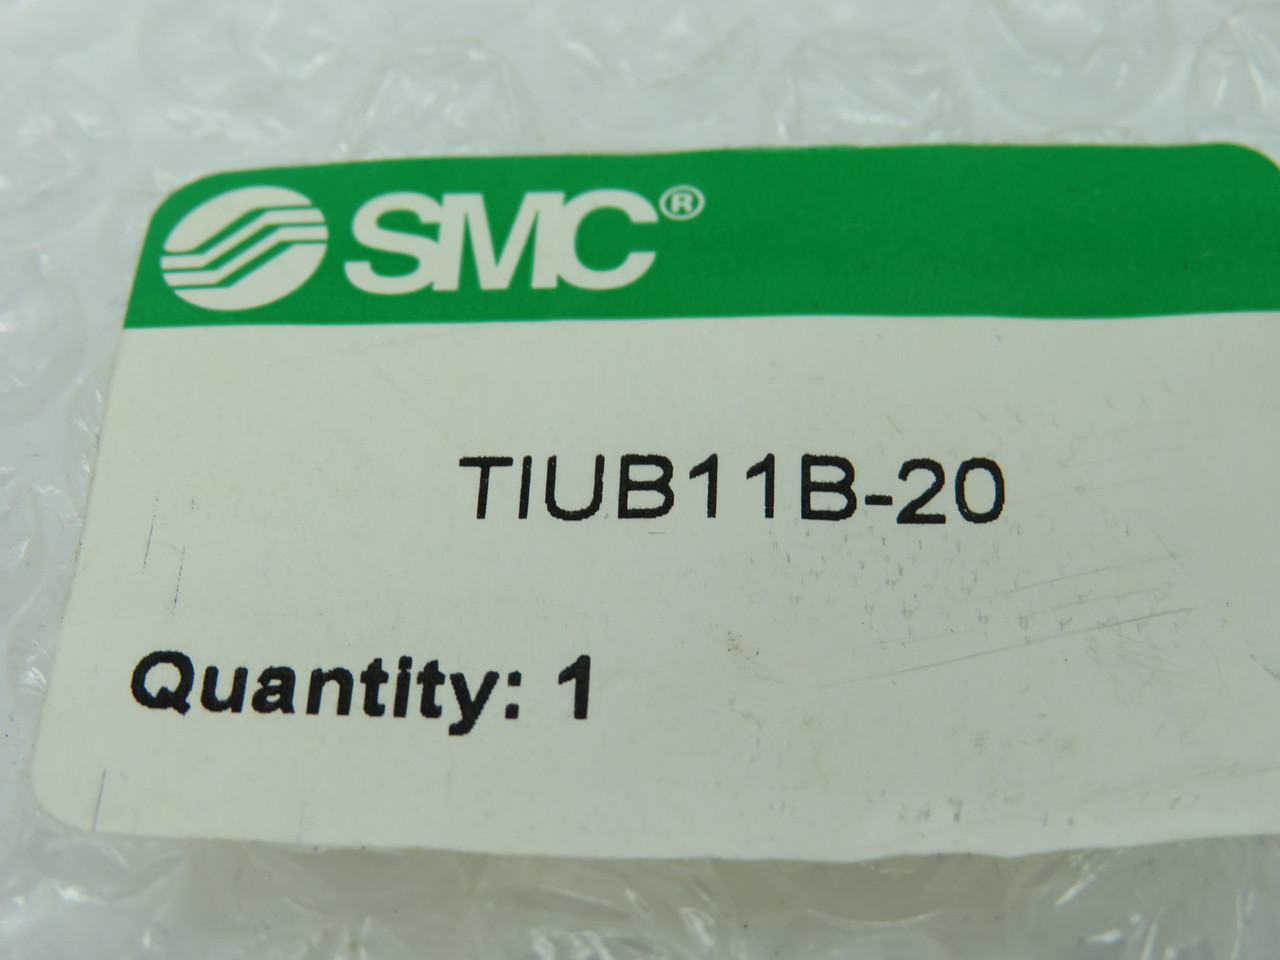 SMC TIUB11B-20 Blue Polyurethane Tubing 3/8" Tube Size CUT TO 1.5m L NWB